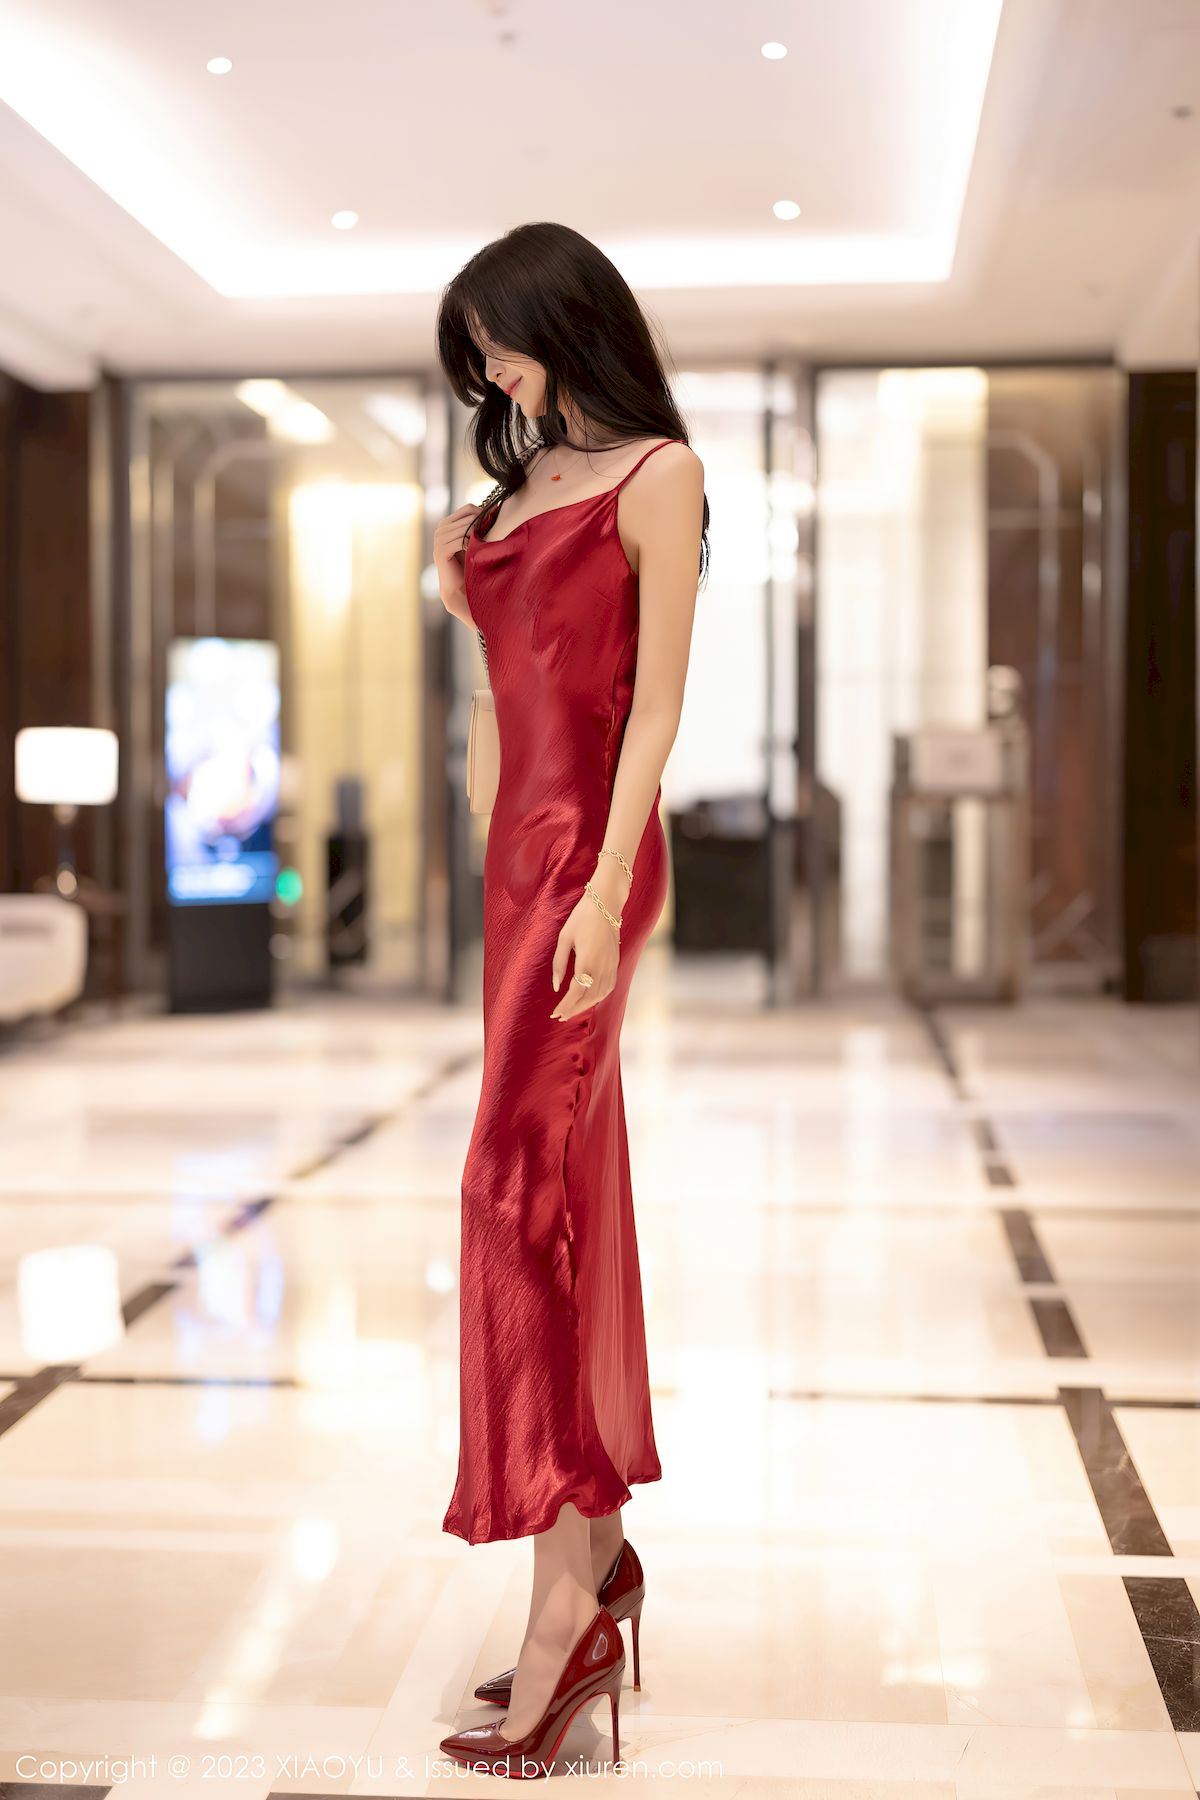 程程程-红色礼裙黑色蕾丝服饰海南旅拍